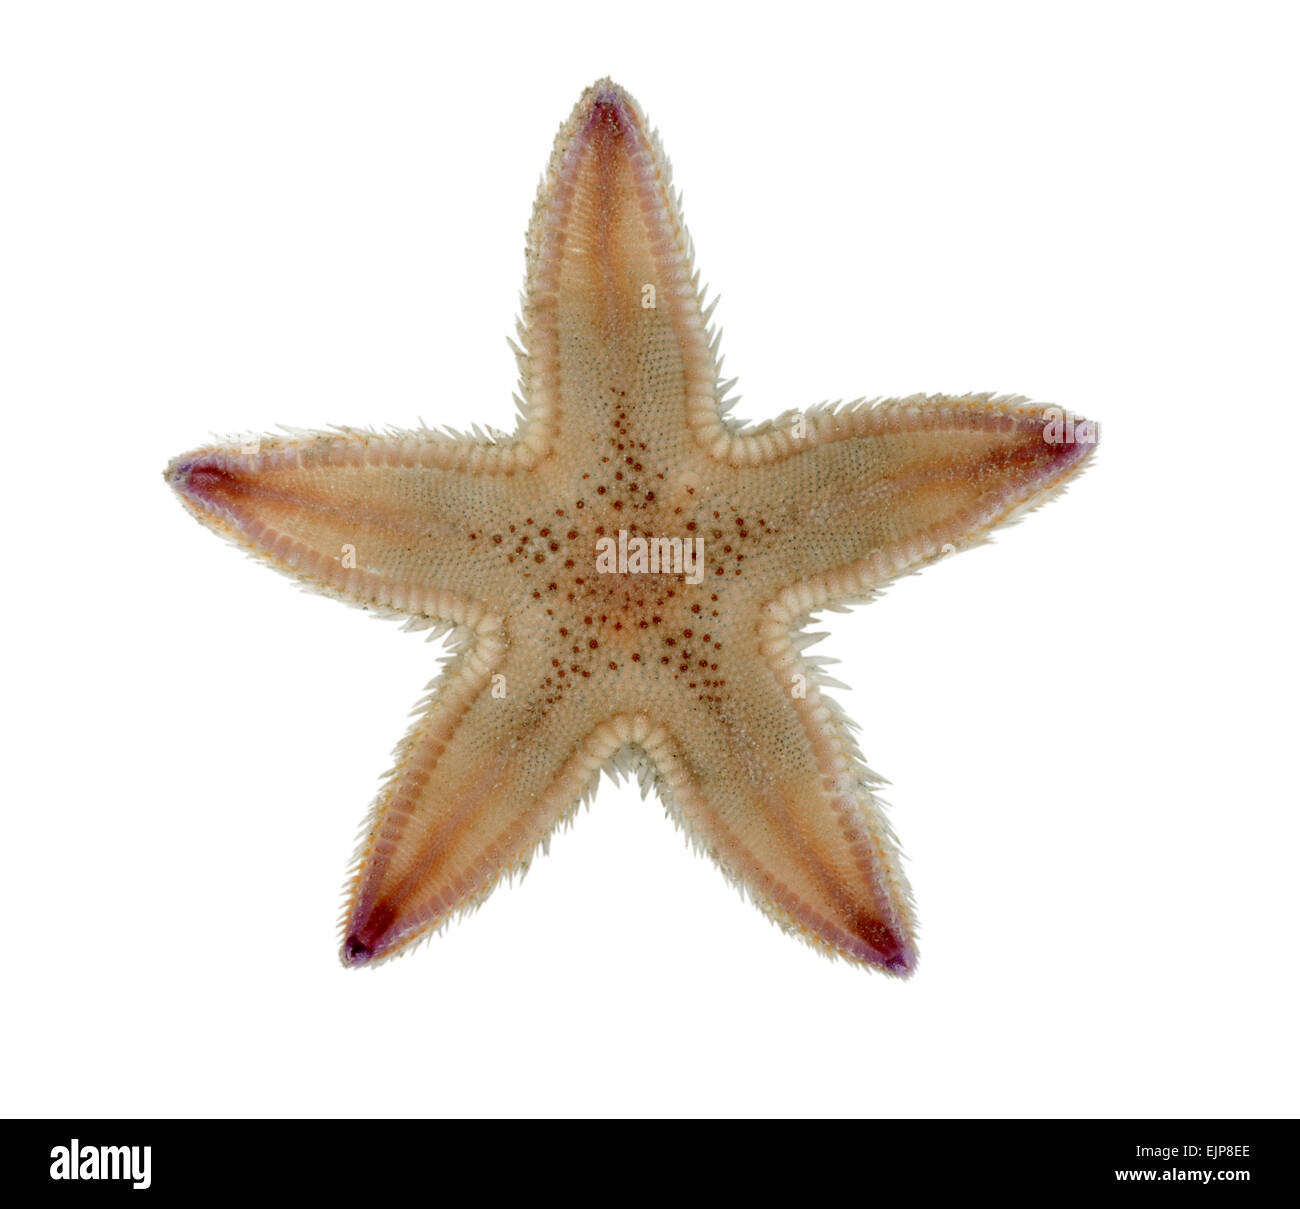 Sand Star - Astropecten irregularis Stock Photo